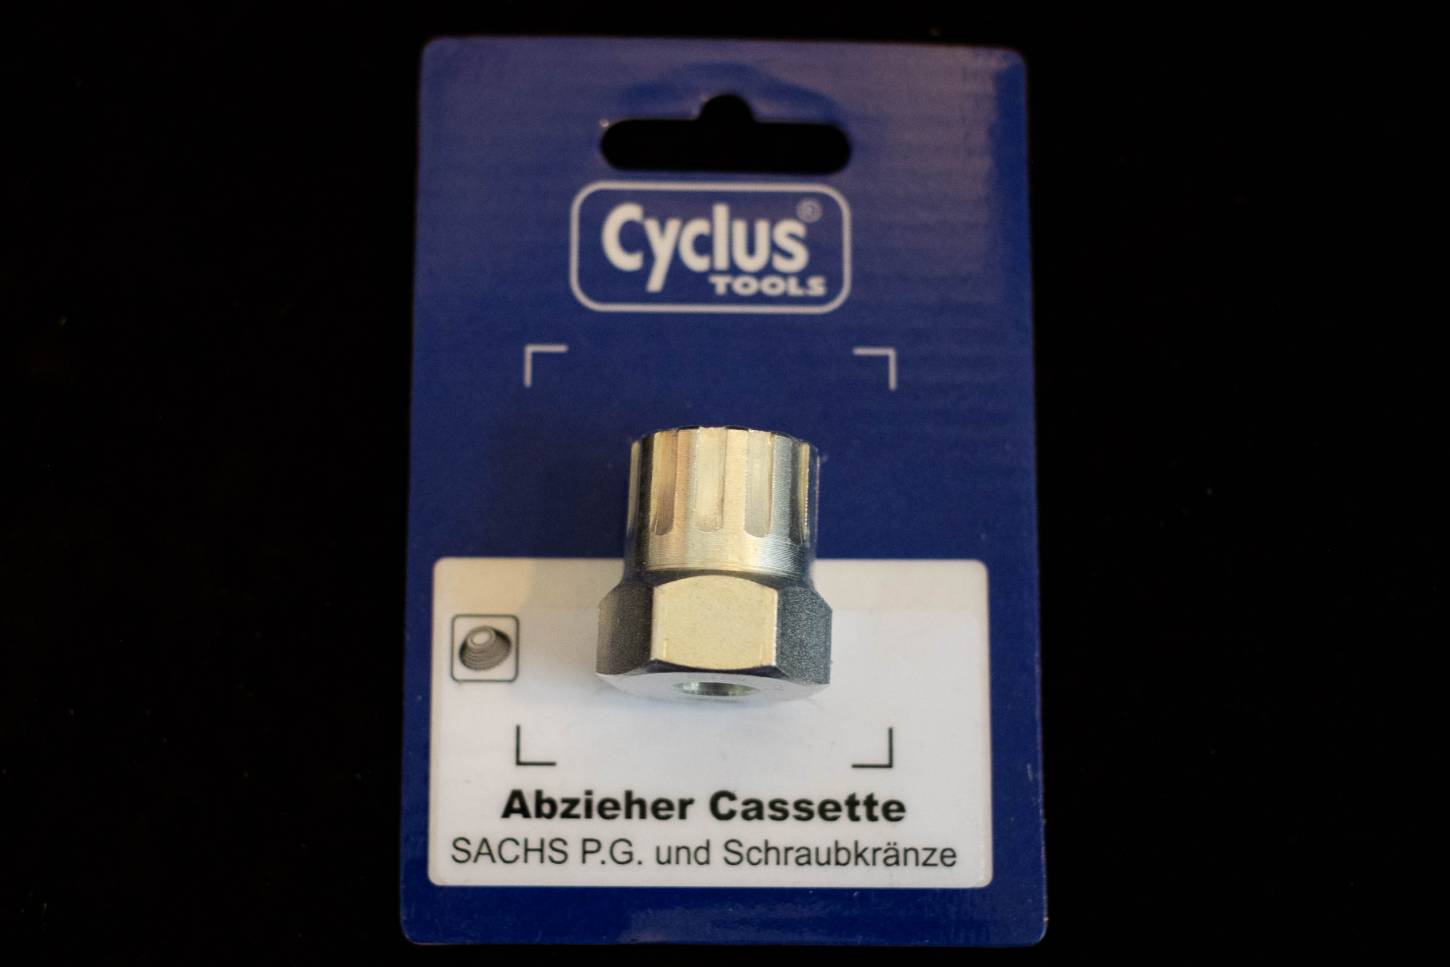 Cyclus Tools Abzieher Cassette SACHS P.G. und Schraubkränze